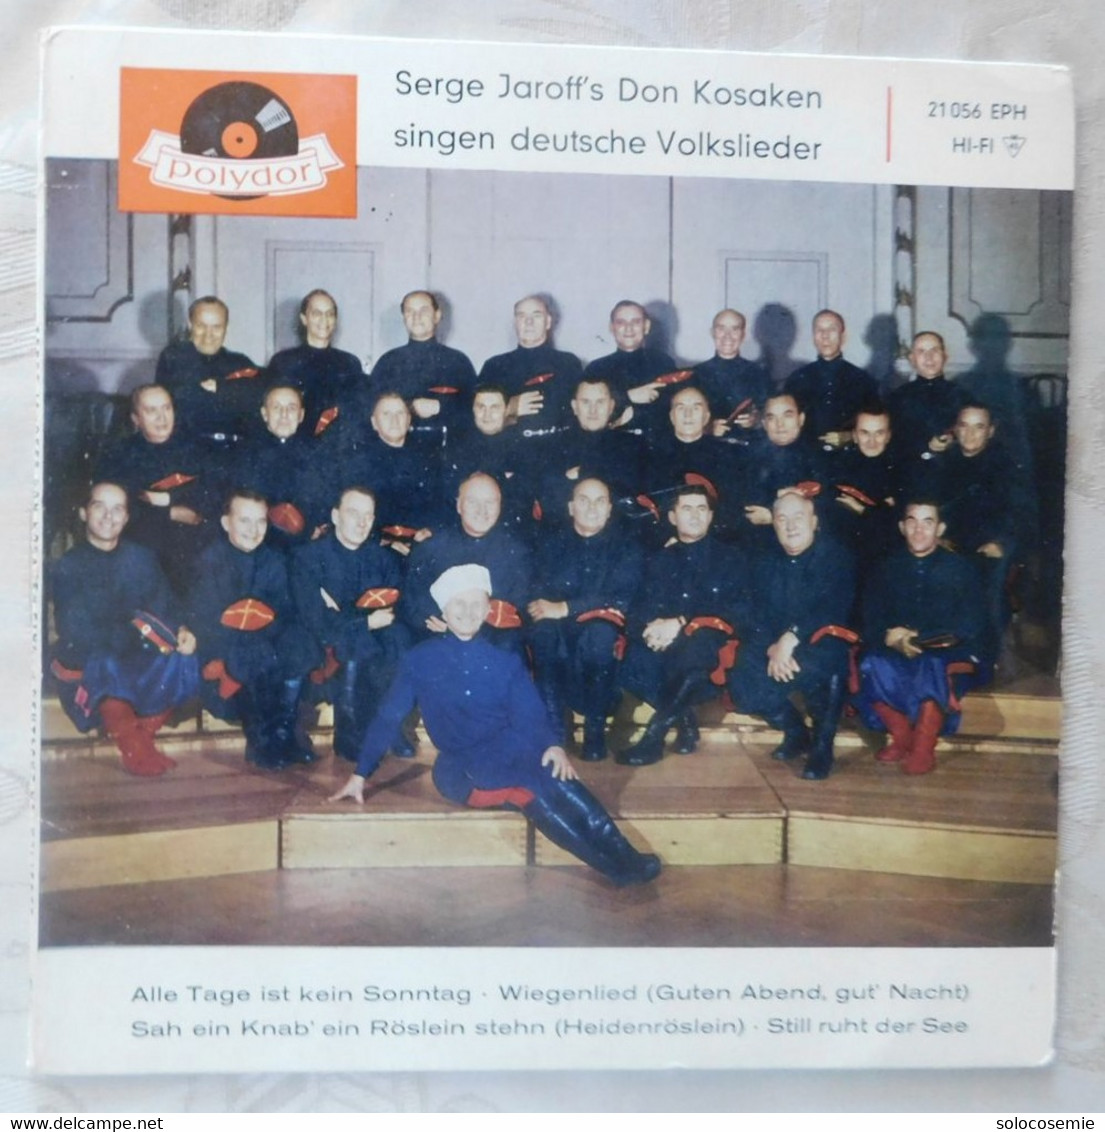 45 Giri Disco In Vinile: Serge Jaroff's Don Kosaken Singen Deutsche Volksilieder  - Polydor  21056 EPH - Sonstige - Deutsche Musik